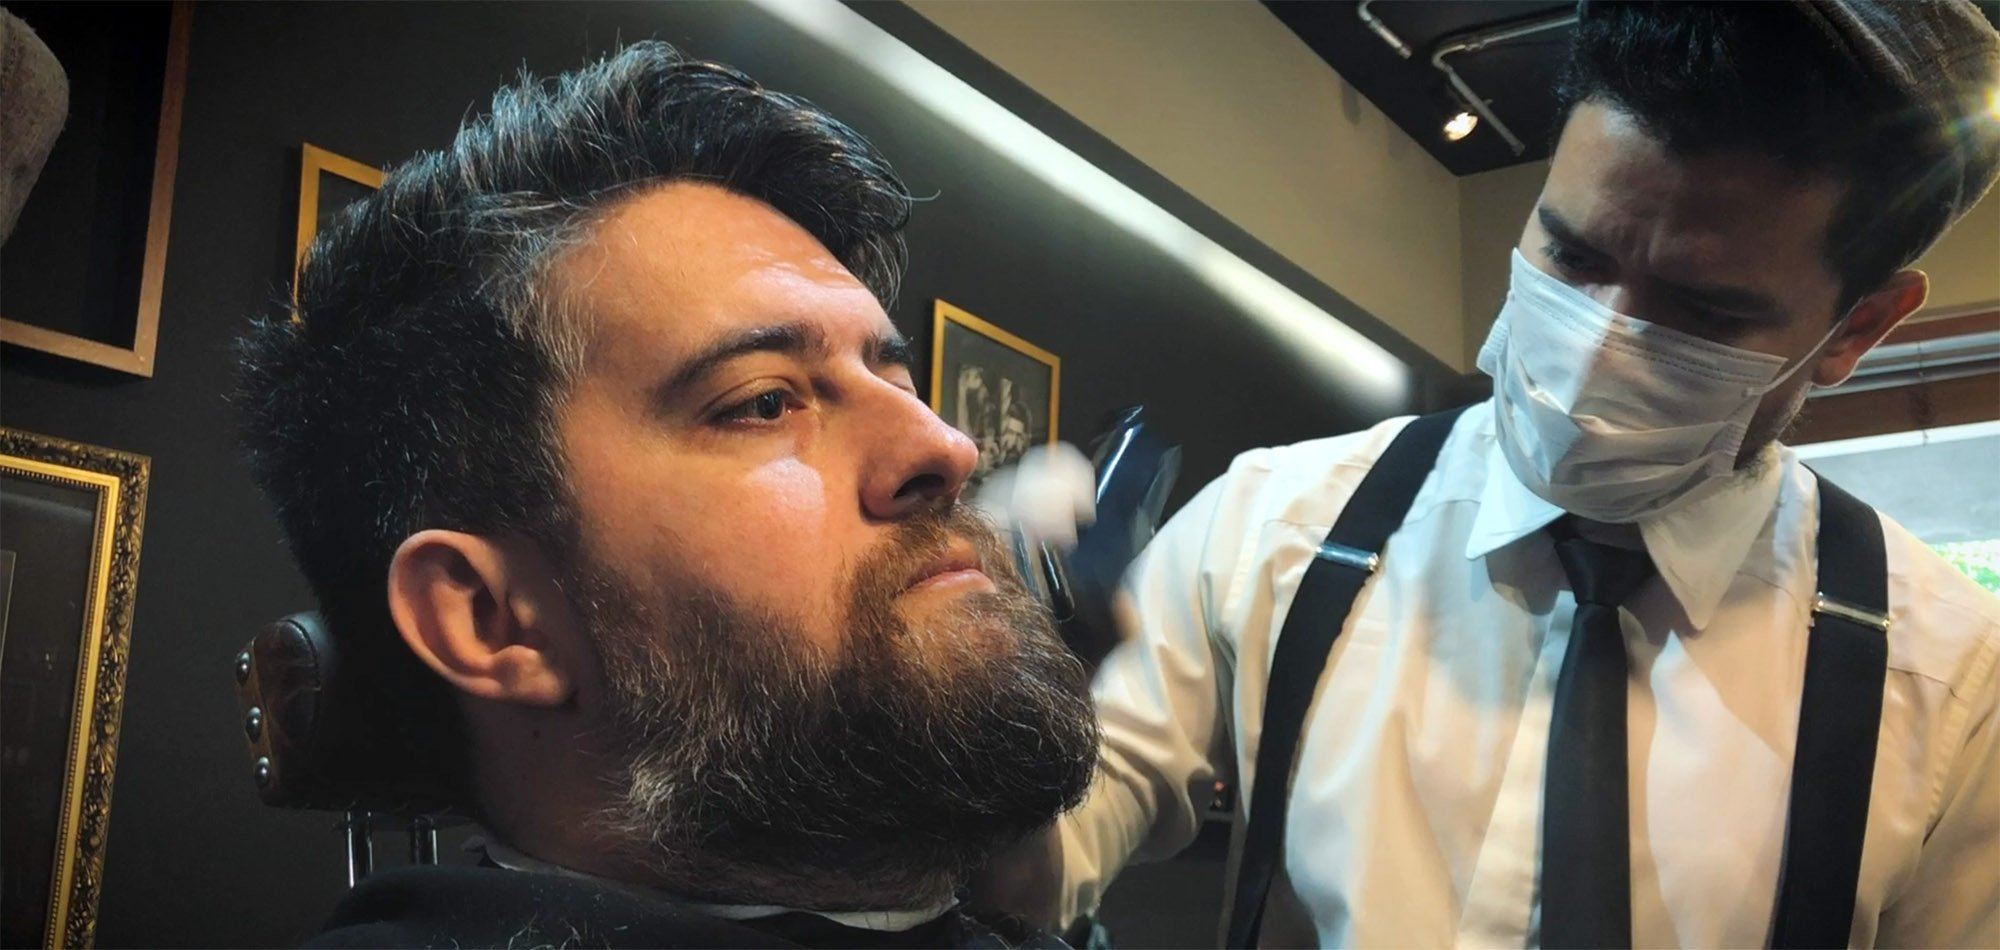 Corte de Barba para Afinar o Rosto | Barbearia do Zé